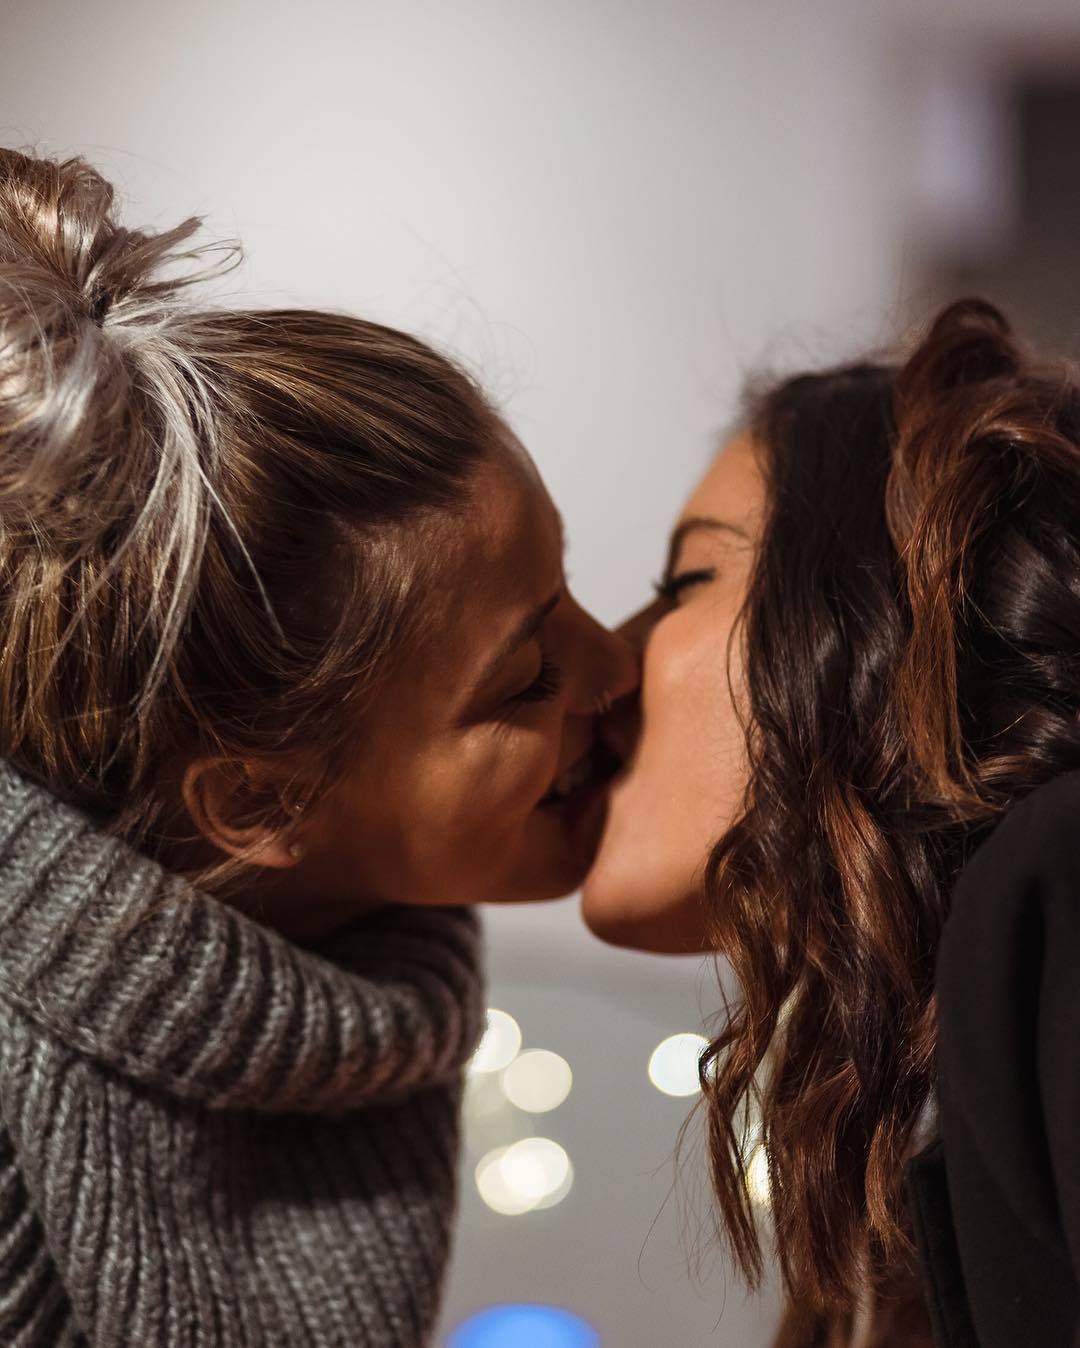 Любовь двух женщин. Поцелуй девушек. Девушки целуются. Красивый поцелуй двух девушек.